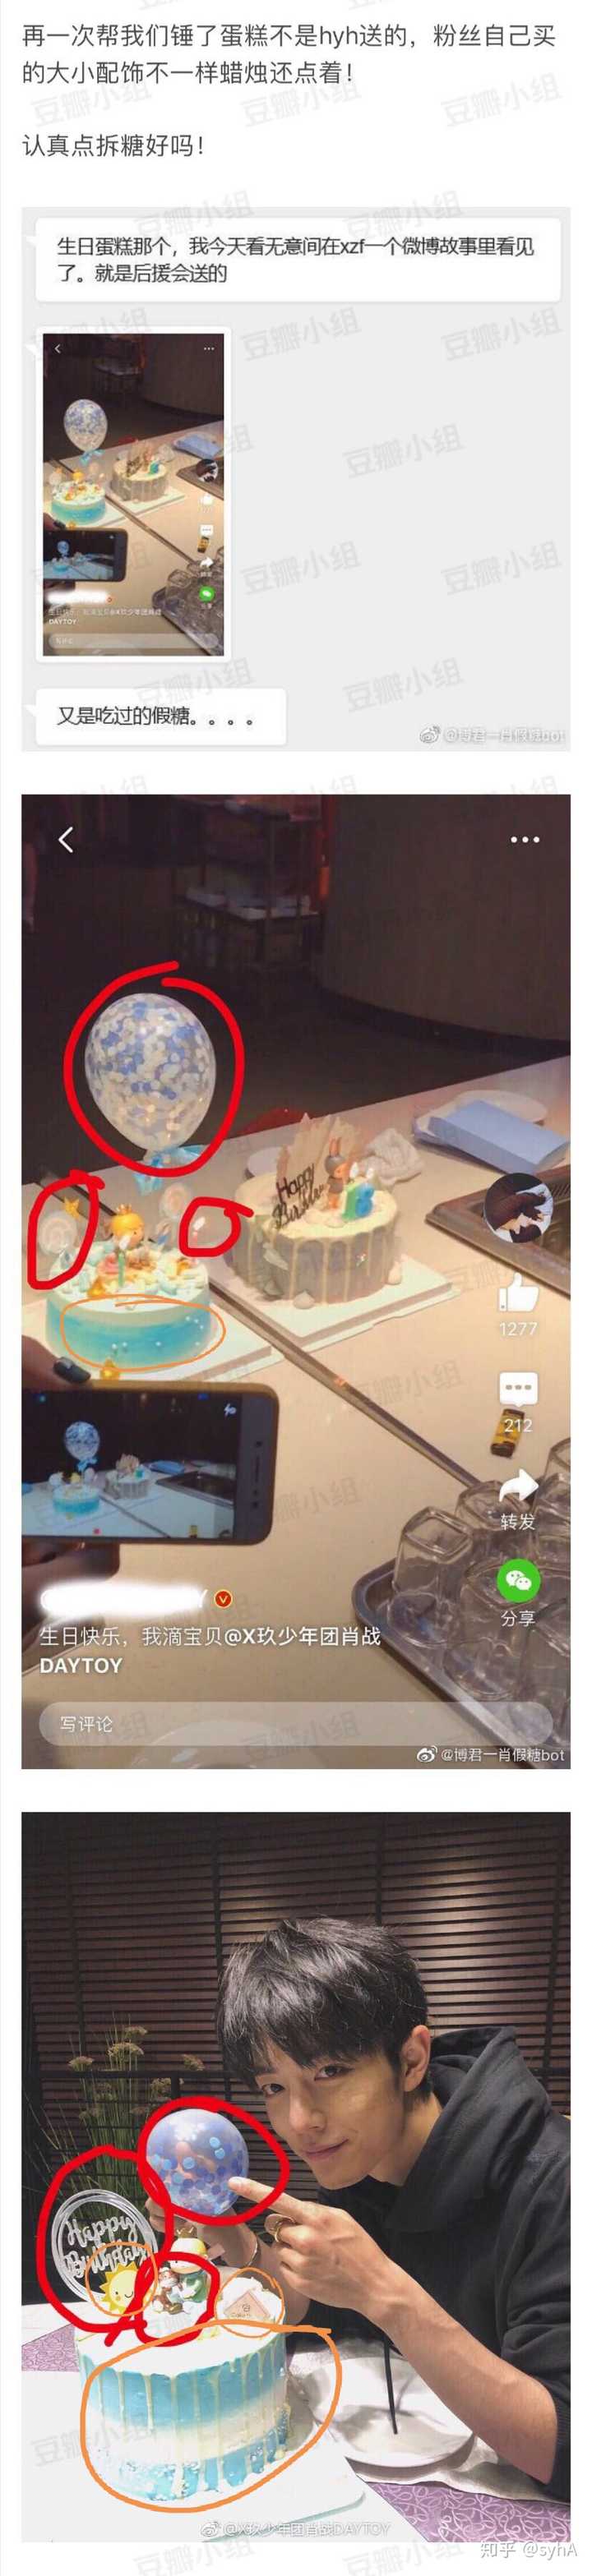 粉丝送的蛋糕和照片里的小王子蛋糕配饰和花纹完全不同,很明显并非是